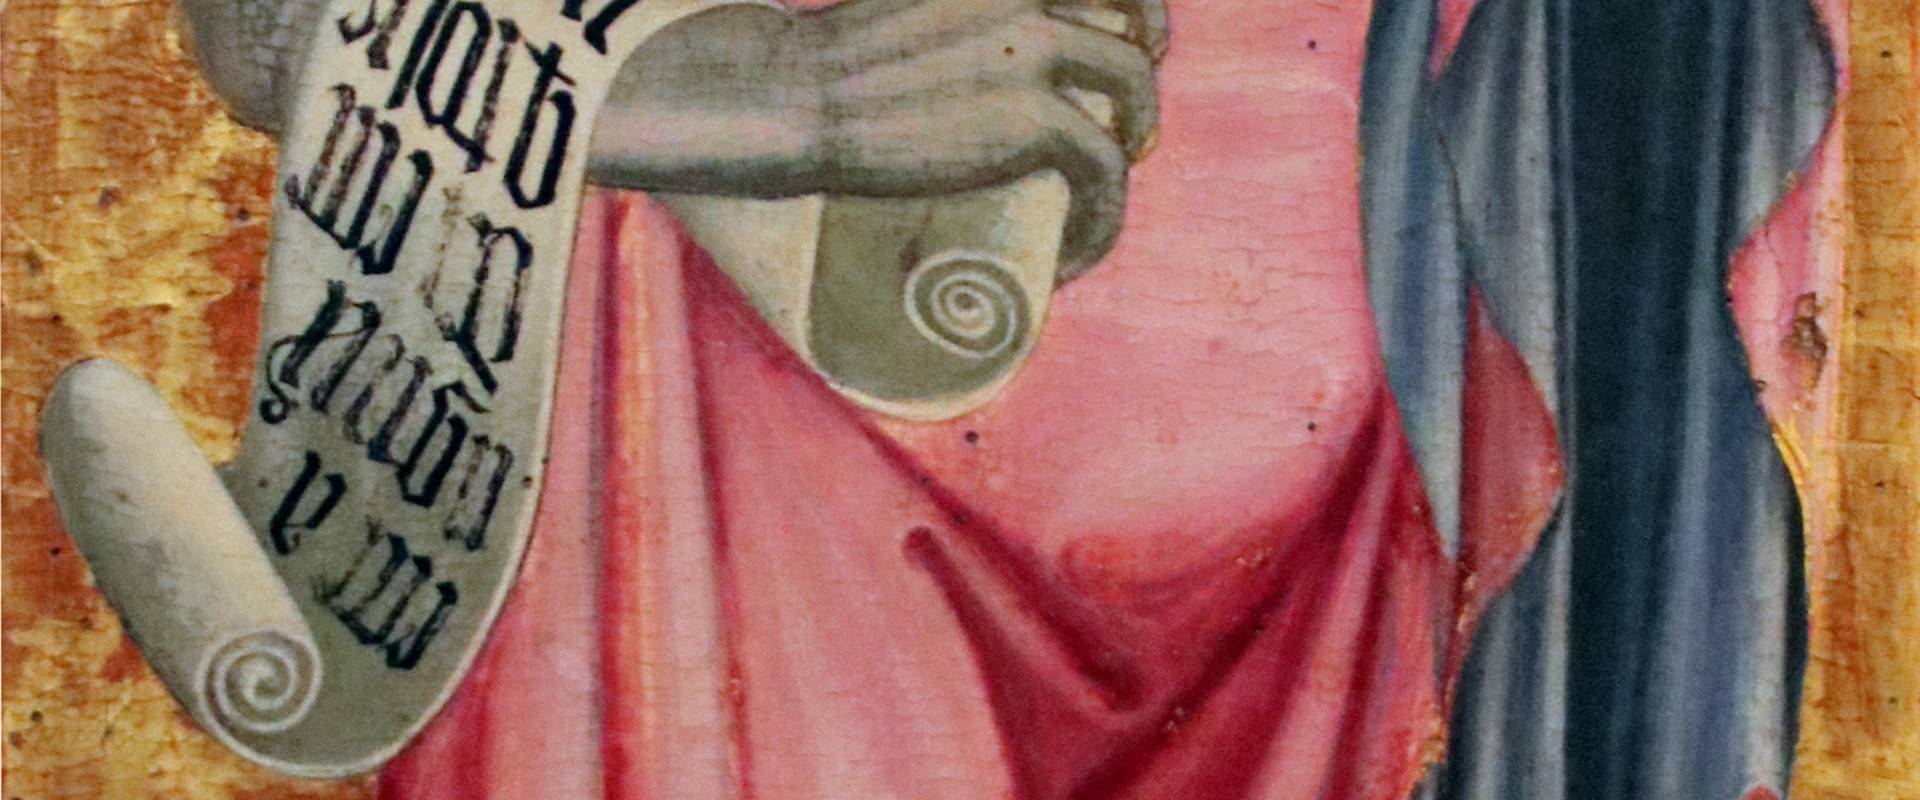 Giacomo di Nicola da Recanati, San Giovanni battista, 1443 photo by Mongolo1984